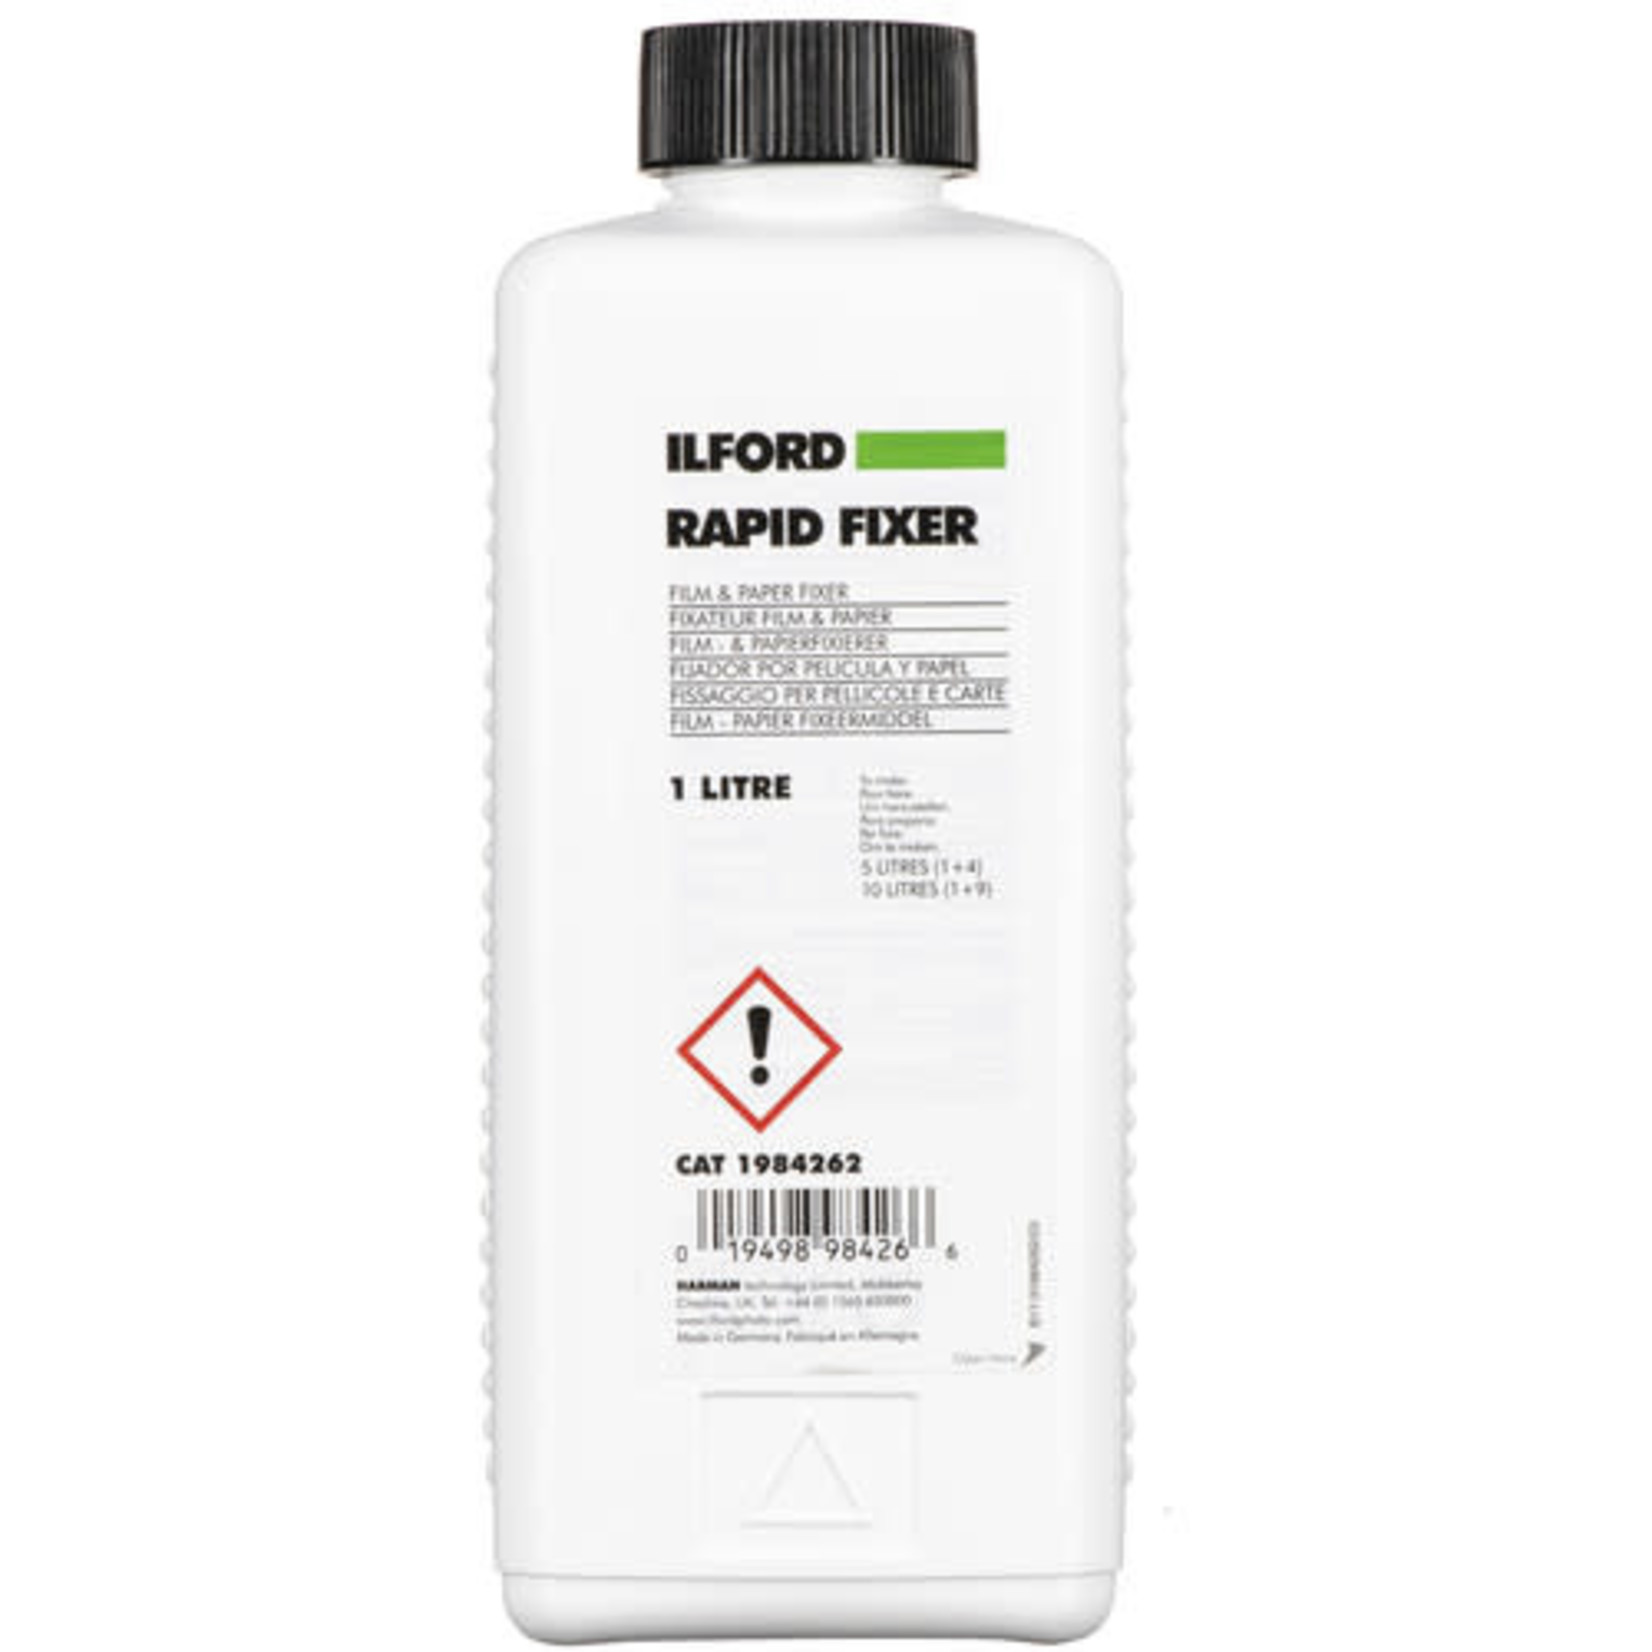 Ilford Ilford Rapid Fixer (Liquid,1 Liter)